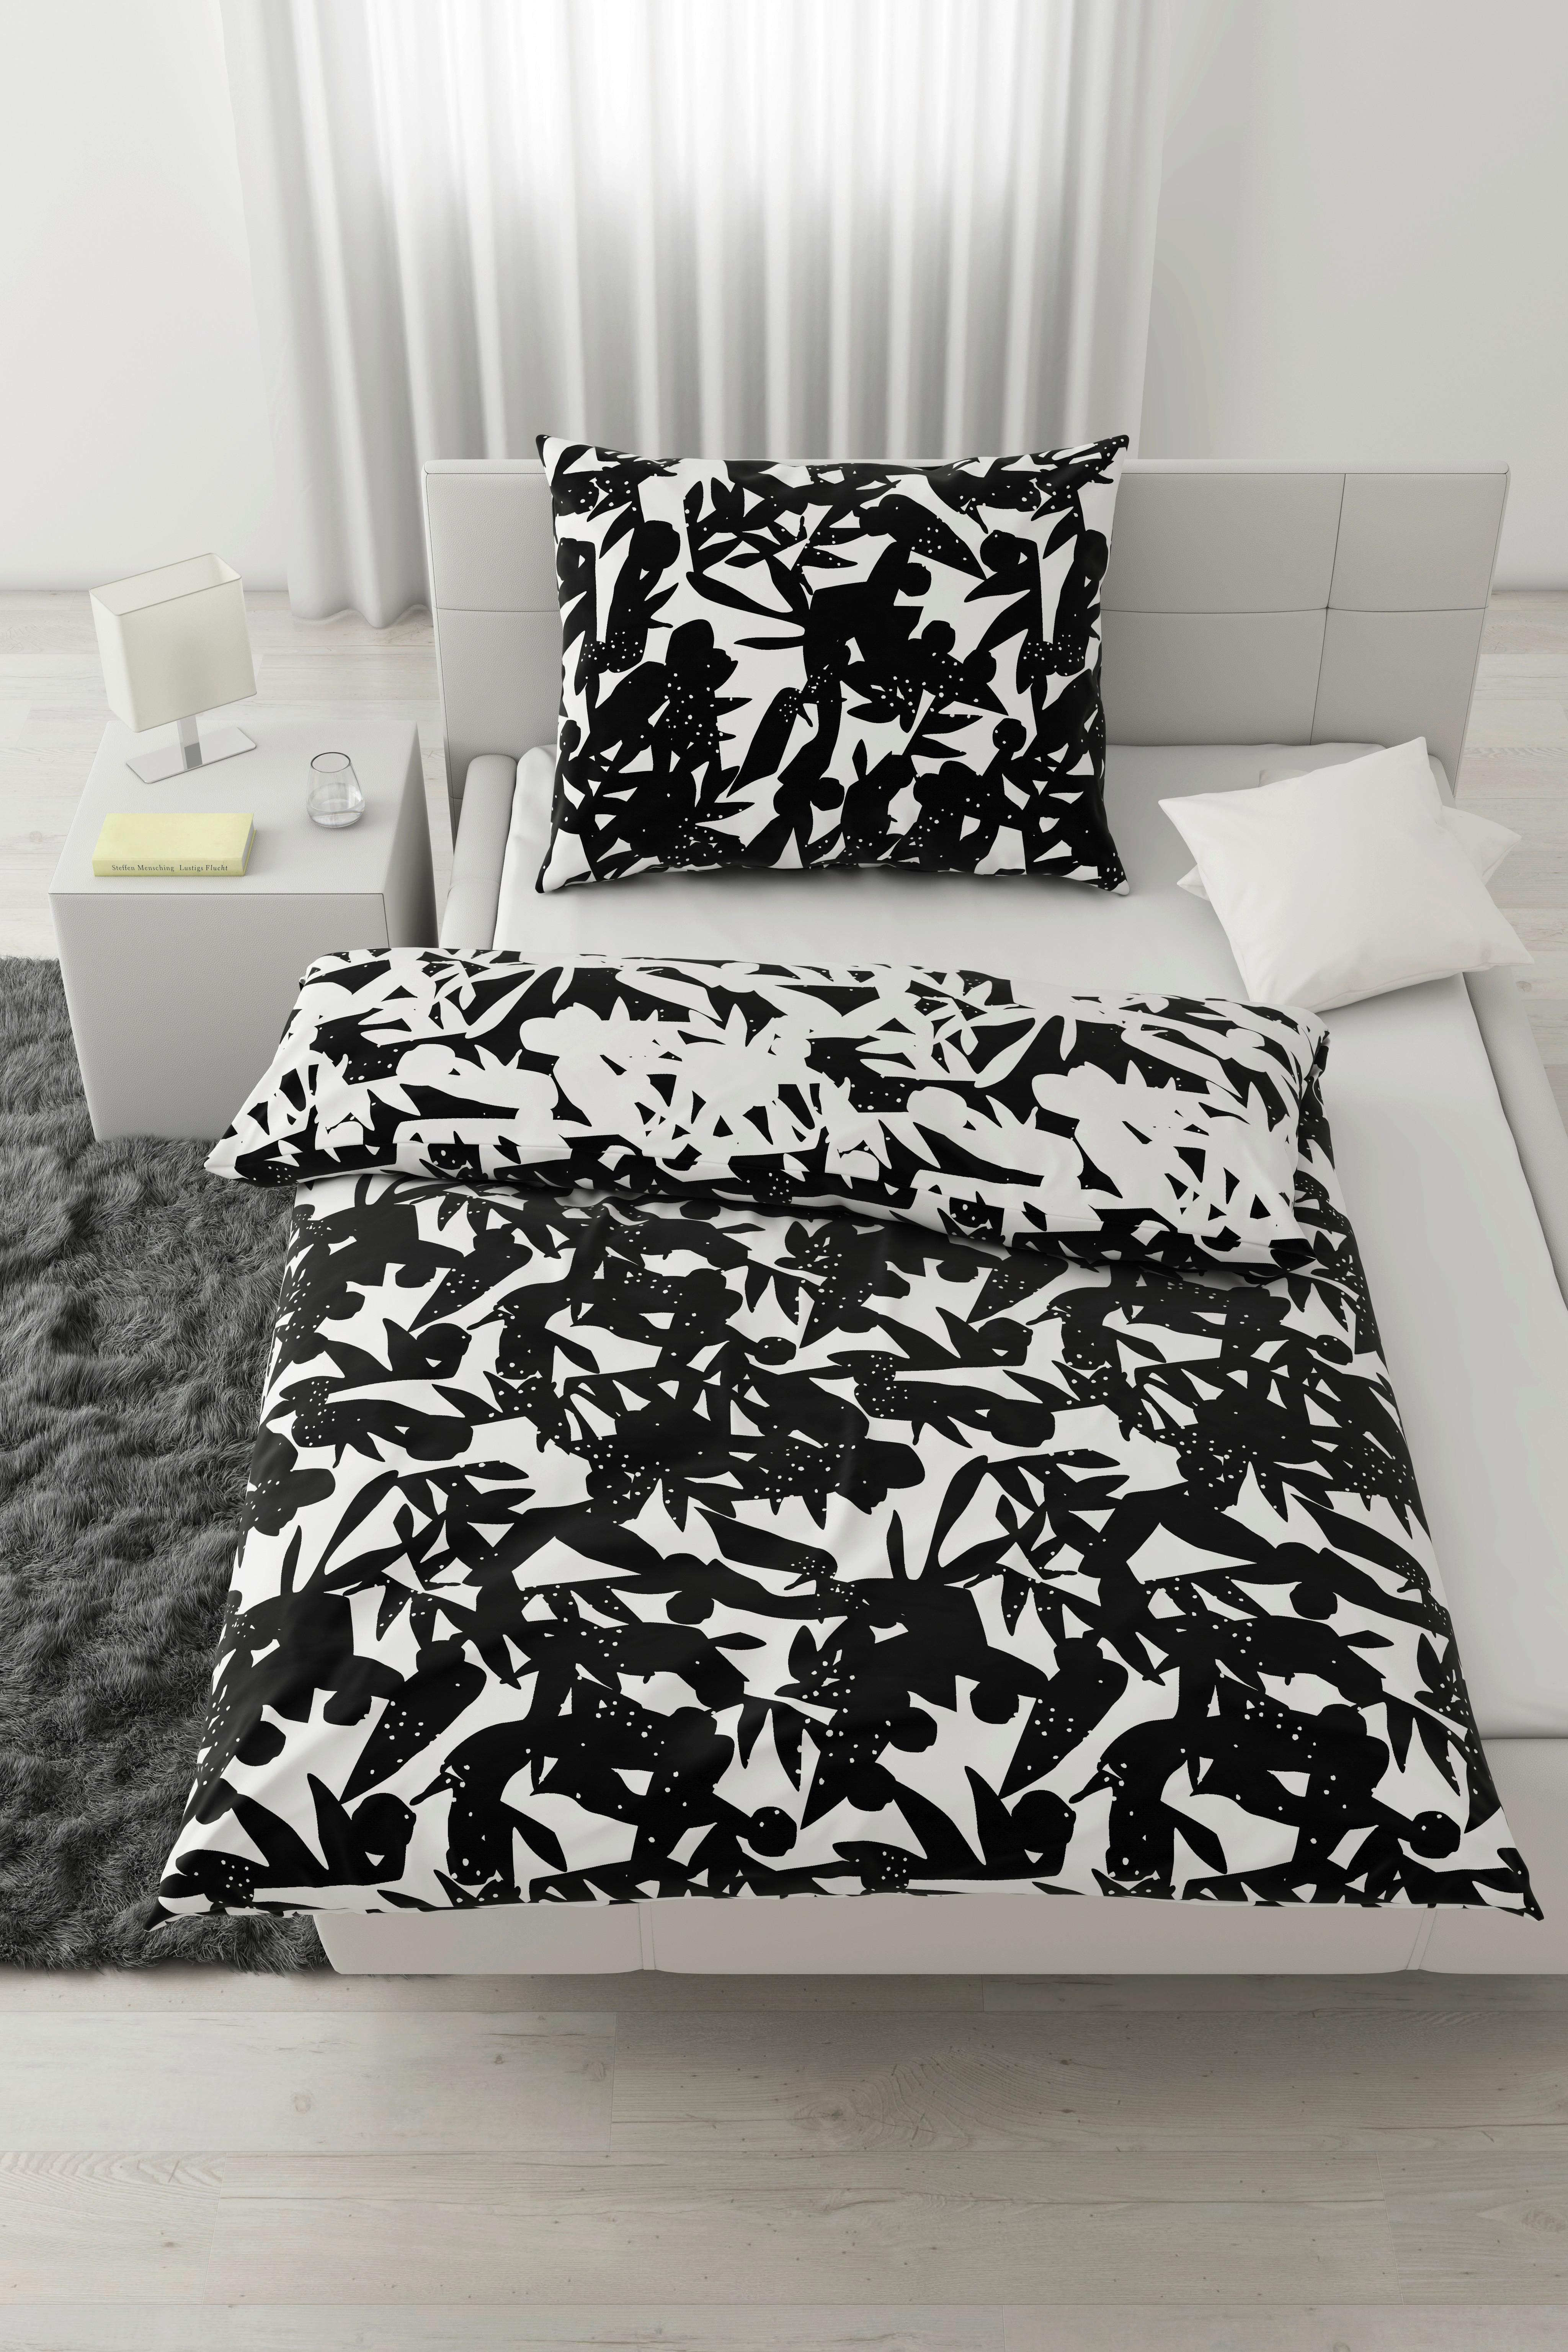 Oboustranné Povlečení Abstract Wende, 140/200cm - bílá/černá, Konvenční, textil (140/200cm) - Based